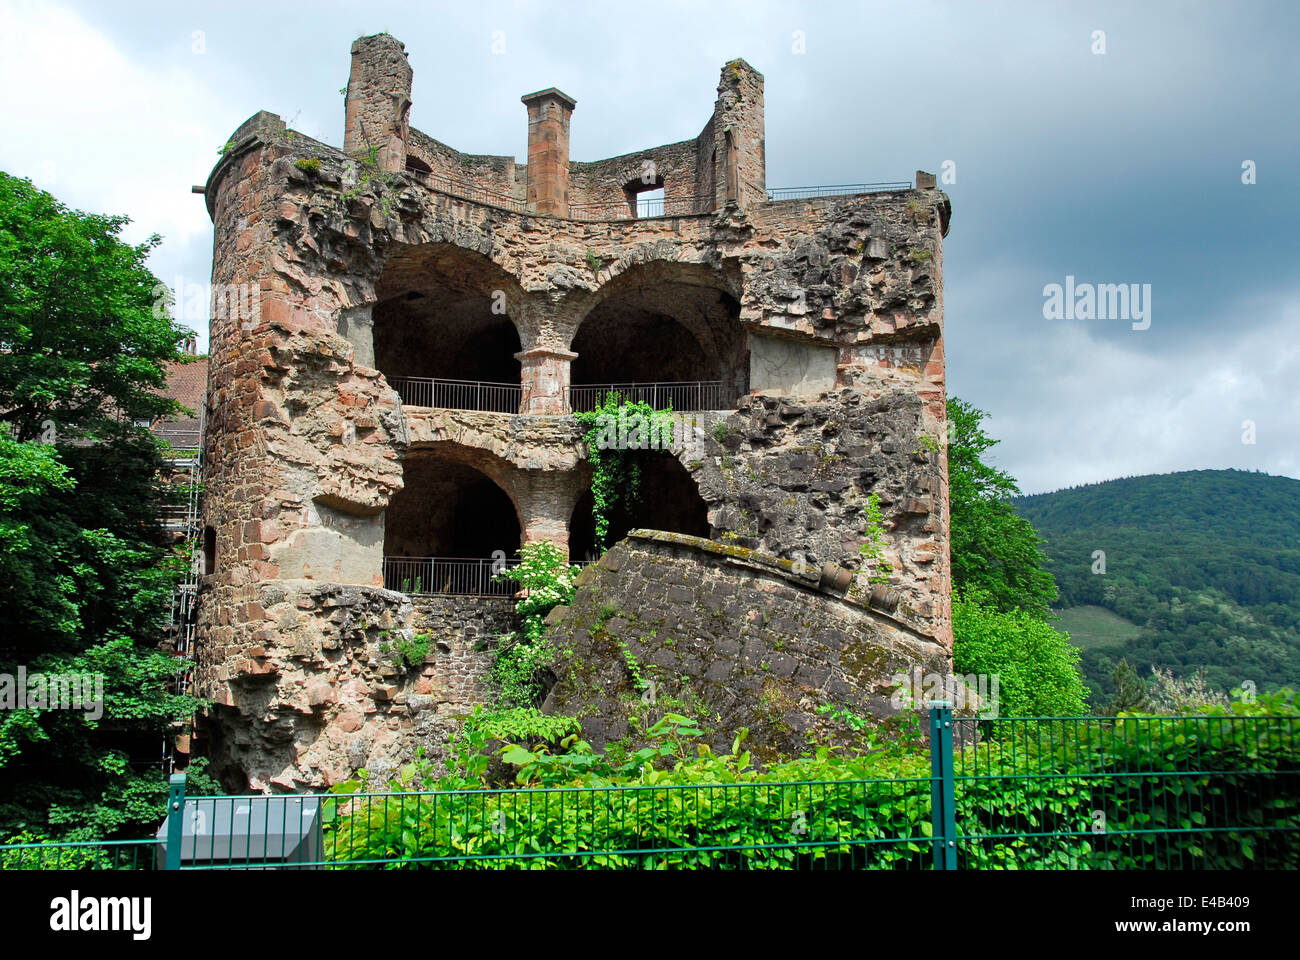 Ruins of Old Heidelberg Castle in Heidelberg, Germany Stock Photo